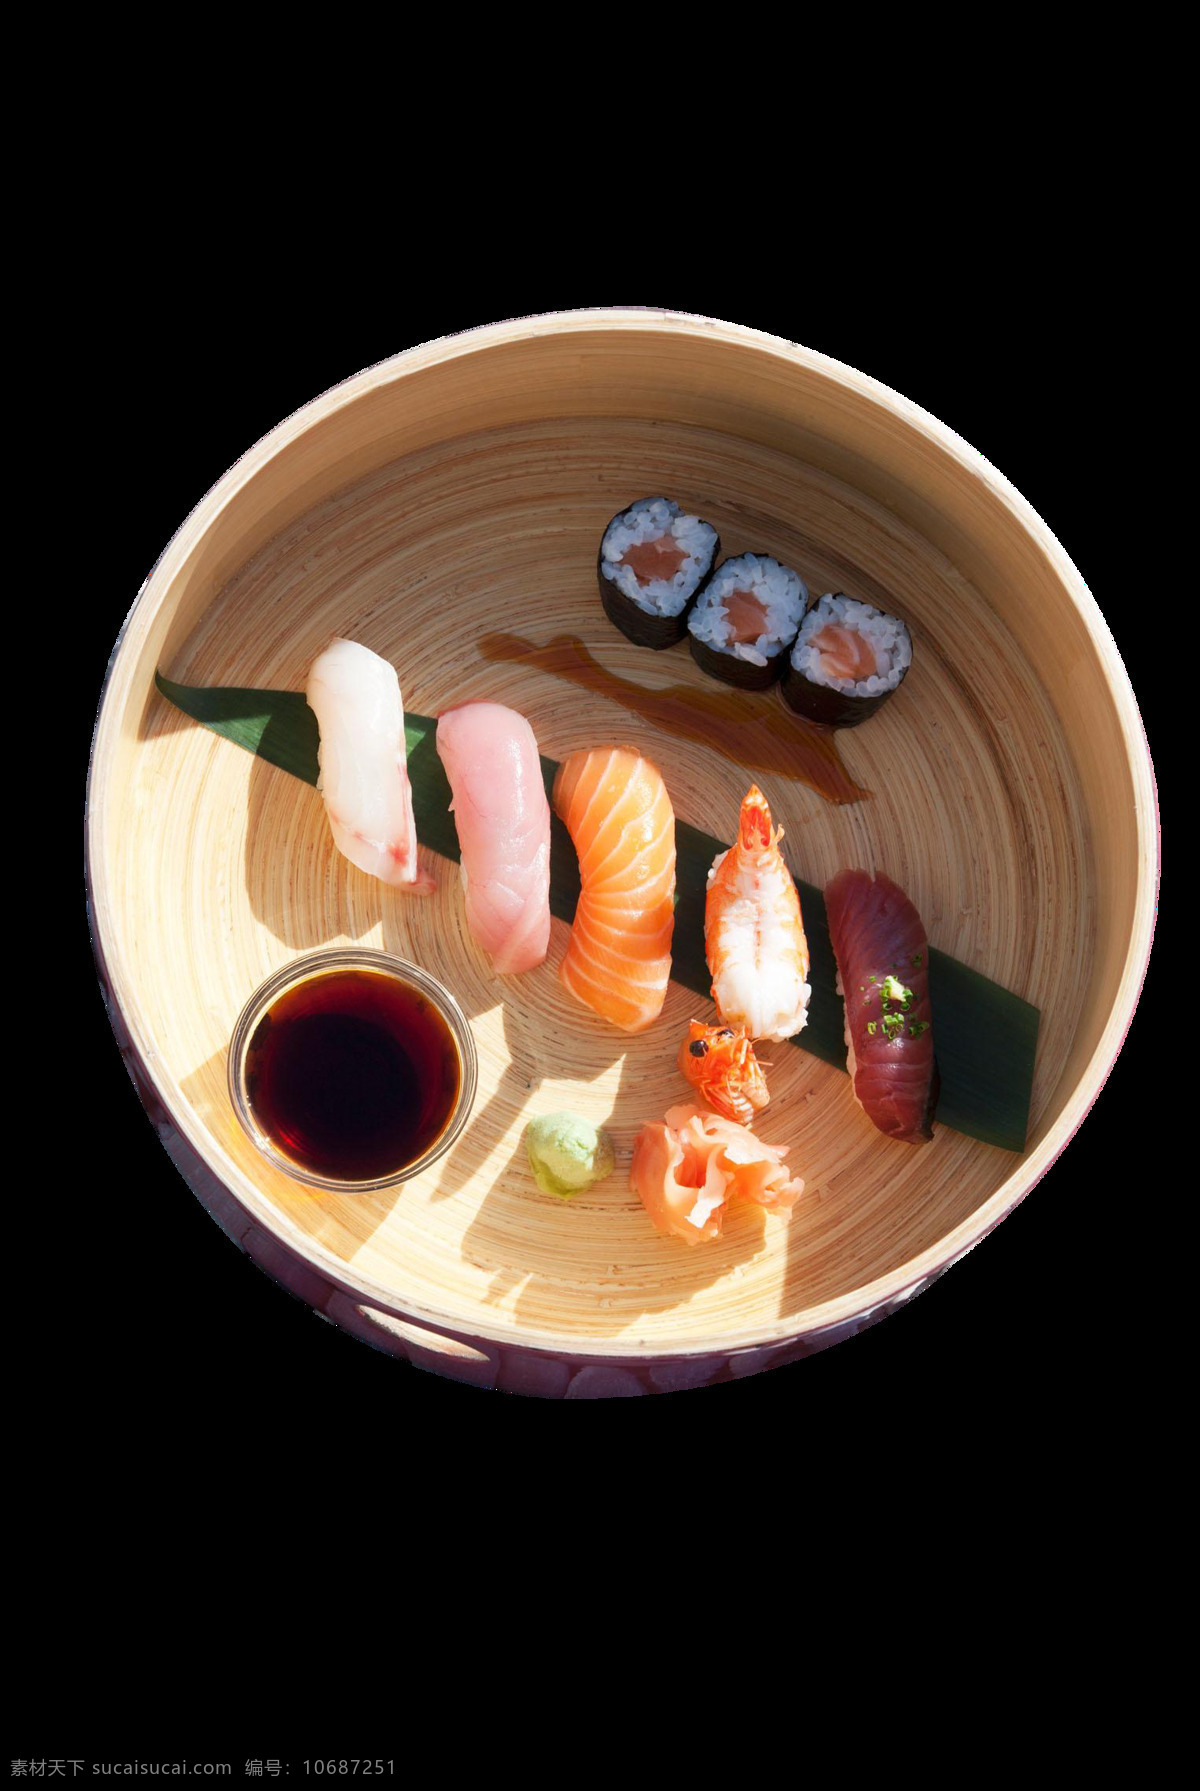 清新 刺身 料理 美食 产品 实物 绿色叶子 日本美食 日式料理 寿司 圆形餐盘 蘸料